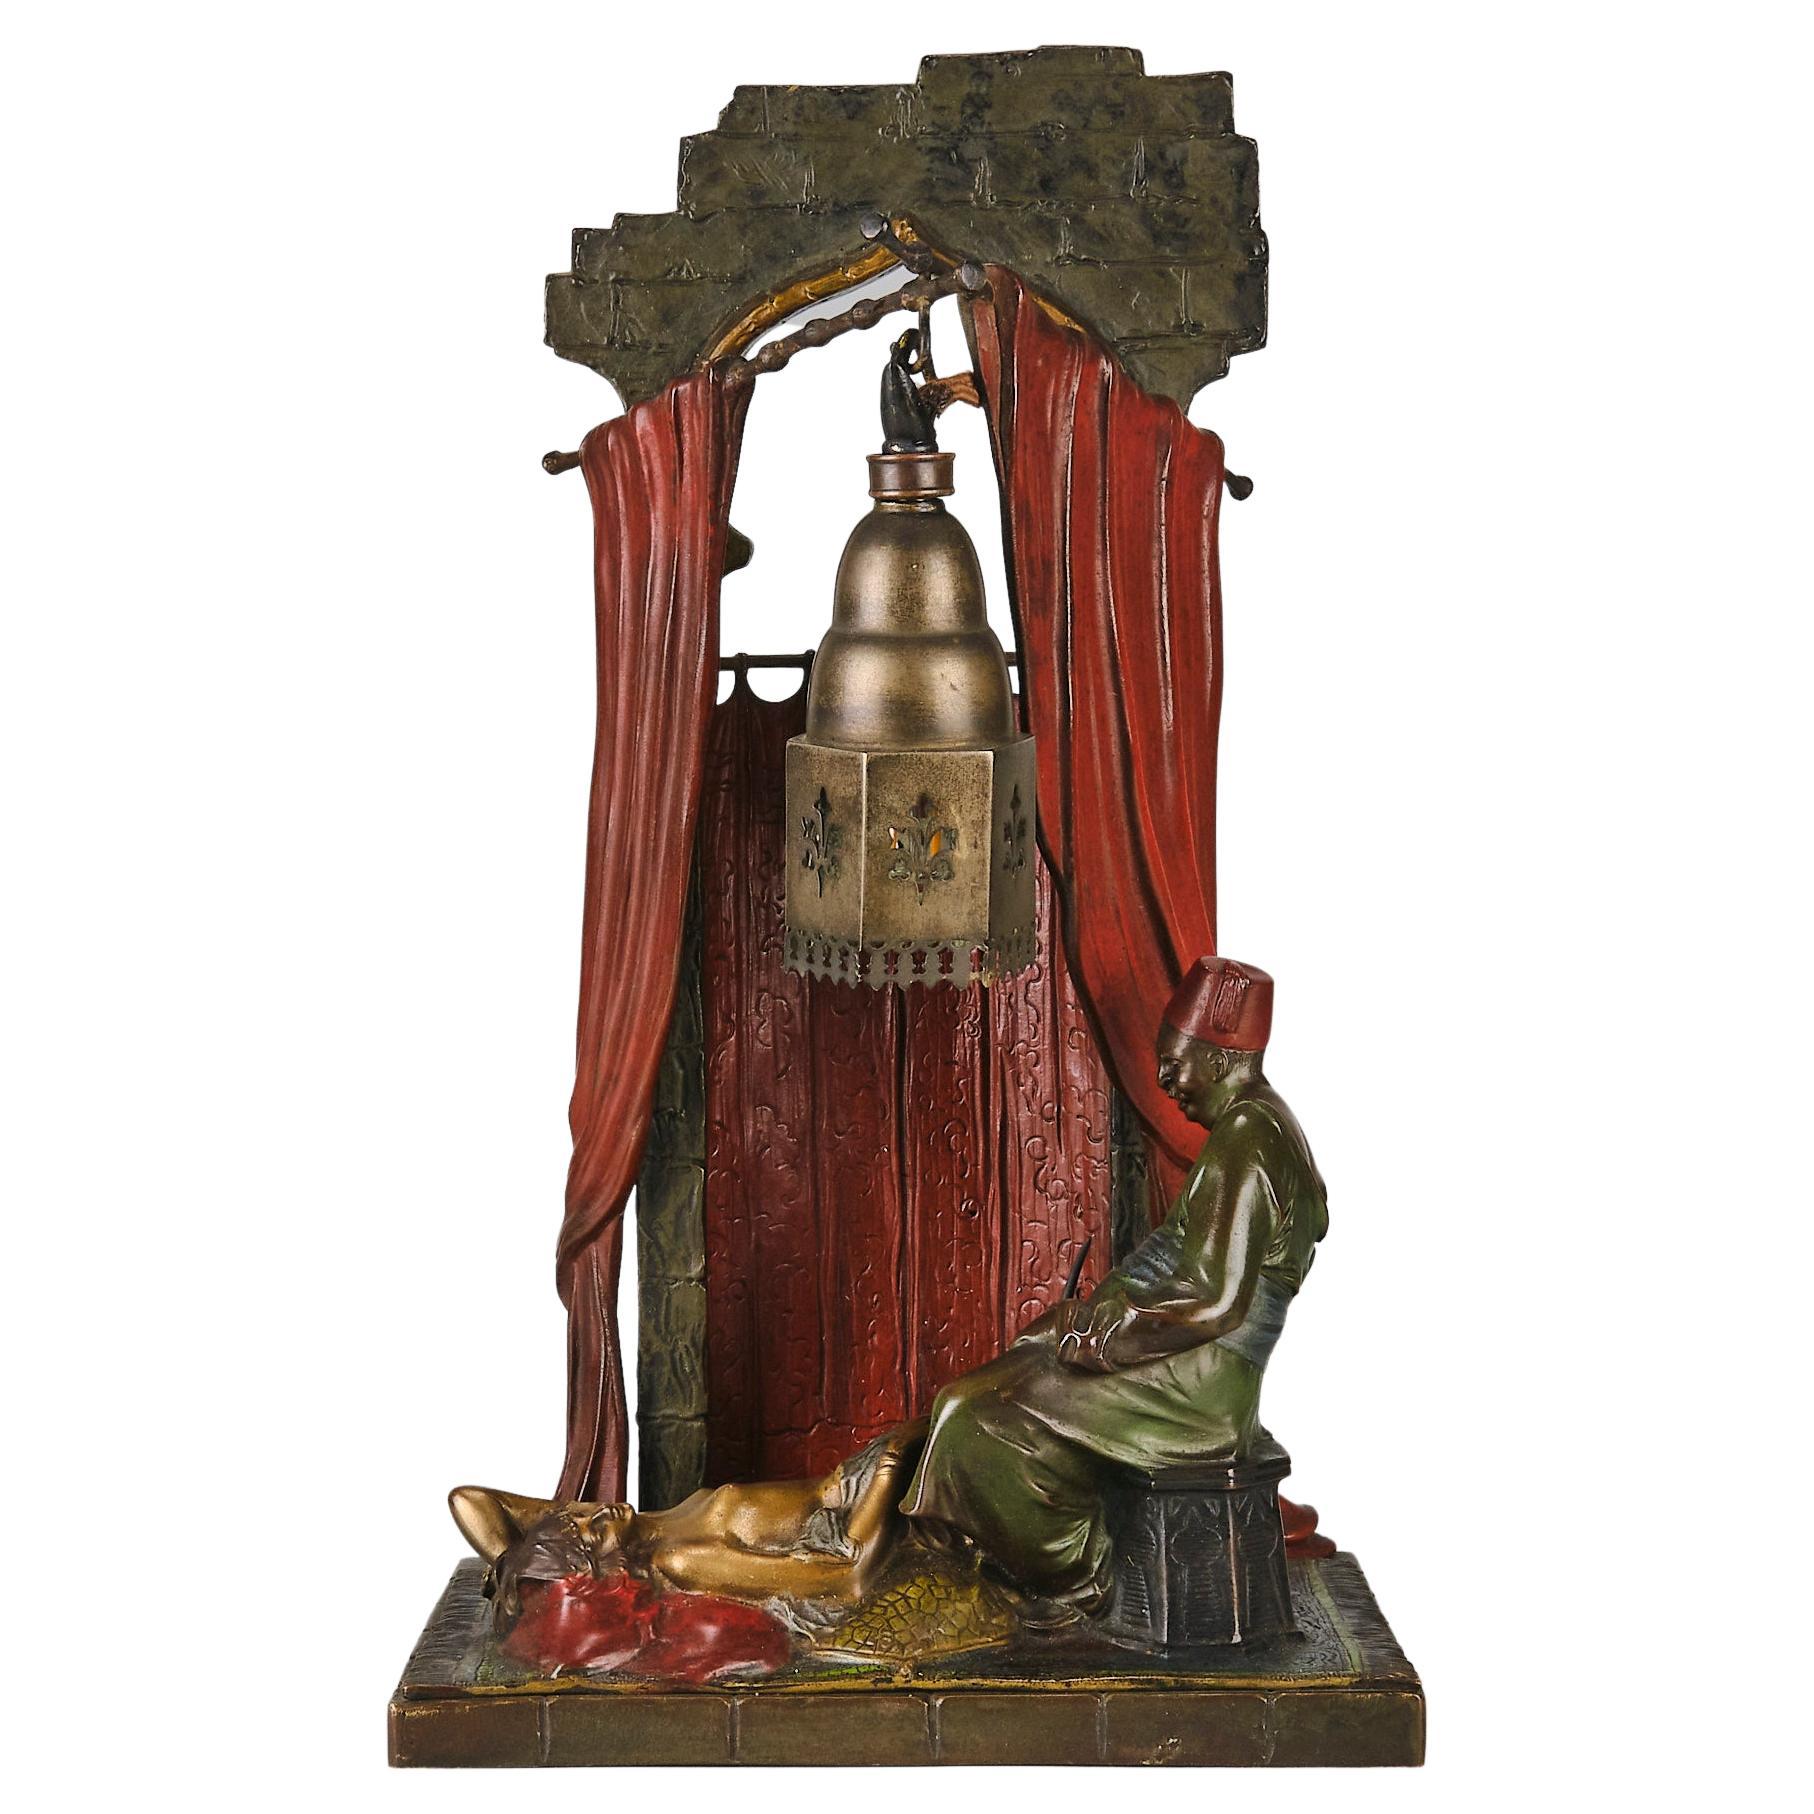  Kaltbemalte Bronzelampe mit dem Titel „Haremenlampe“ von Bruno Zach aus dem frühen 20. Jahrhundert